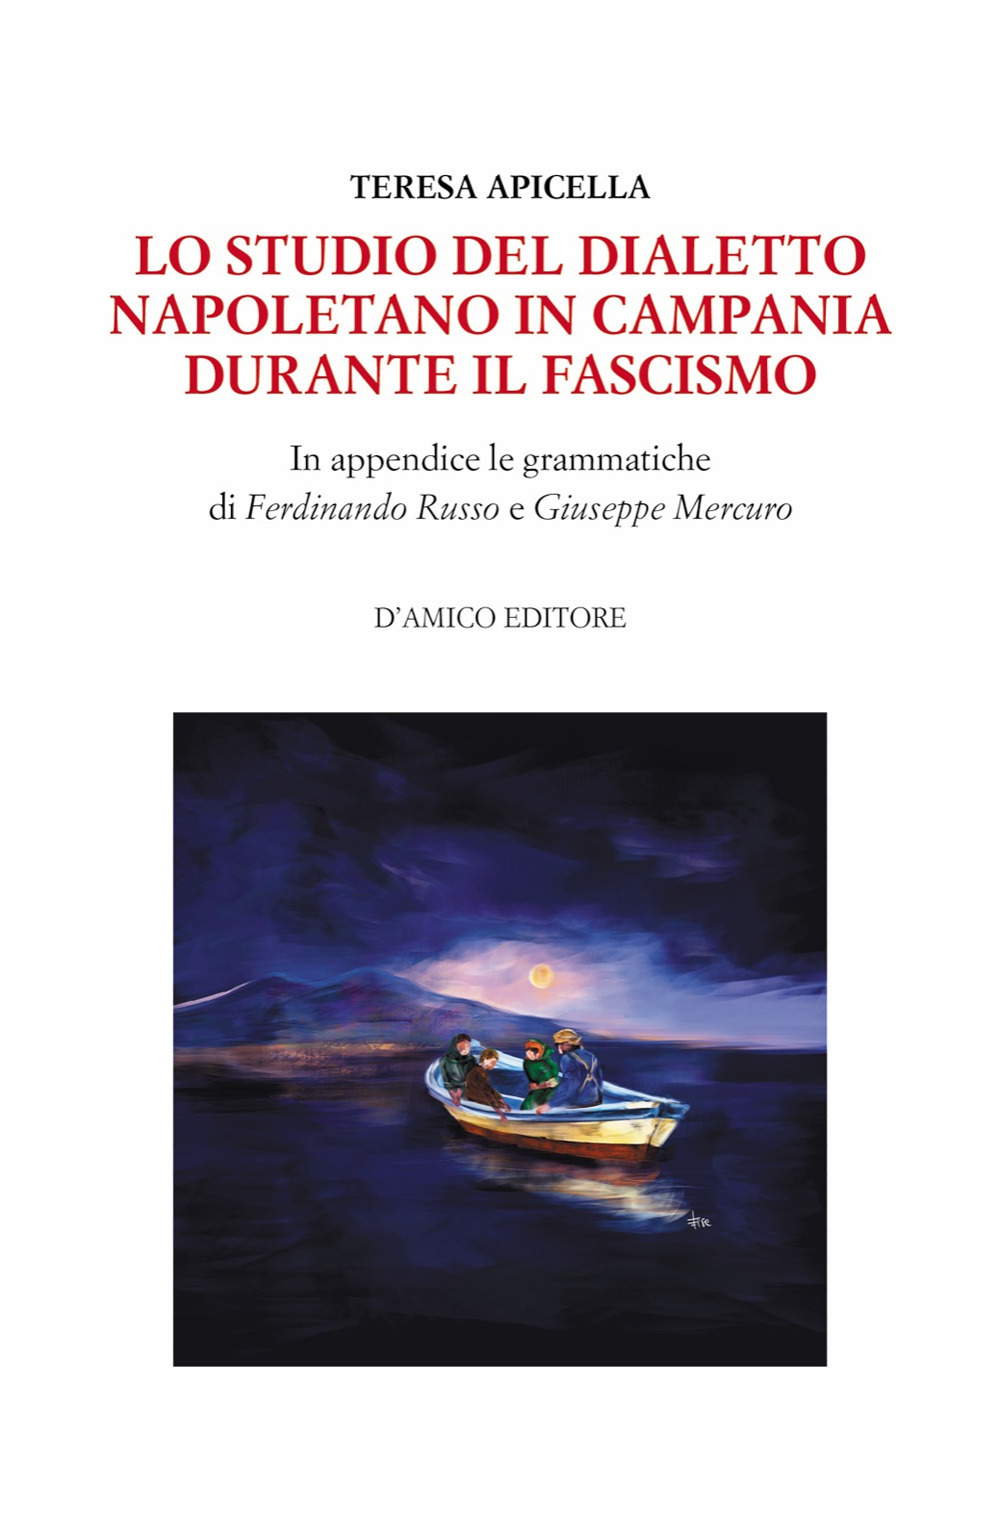 Lo studio del dialetto napoletano in Campania durante il Fascismo. In appendice le grammatiche di Giuseppe Mercuro e Ferdinando Russo